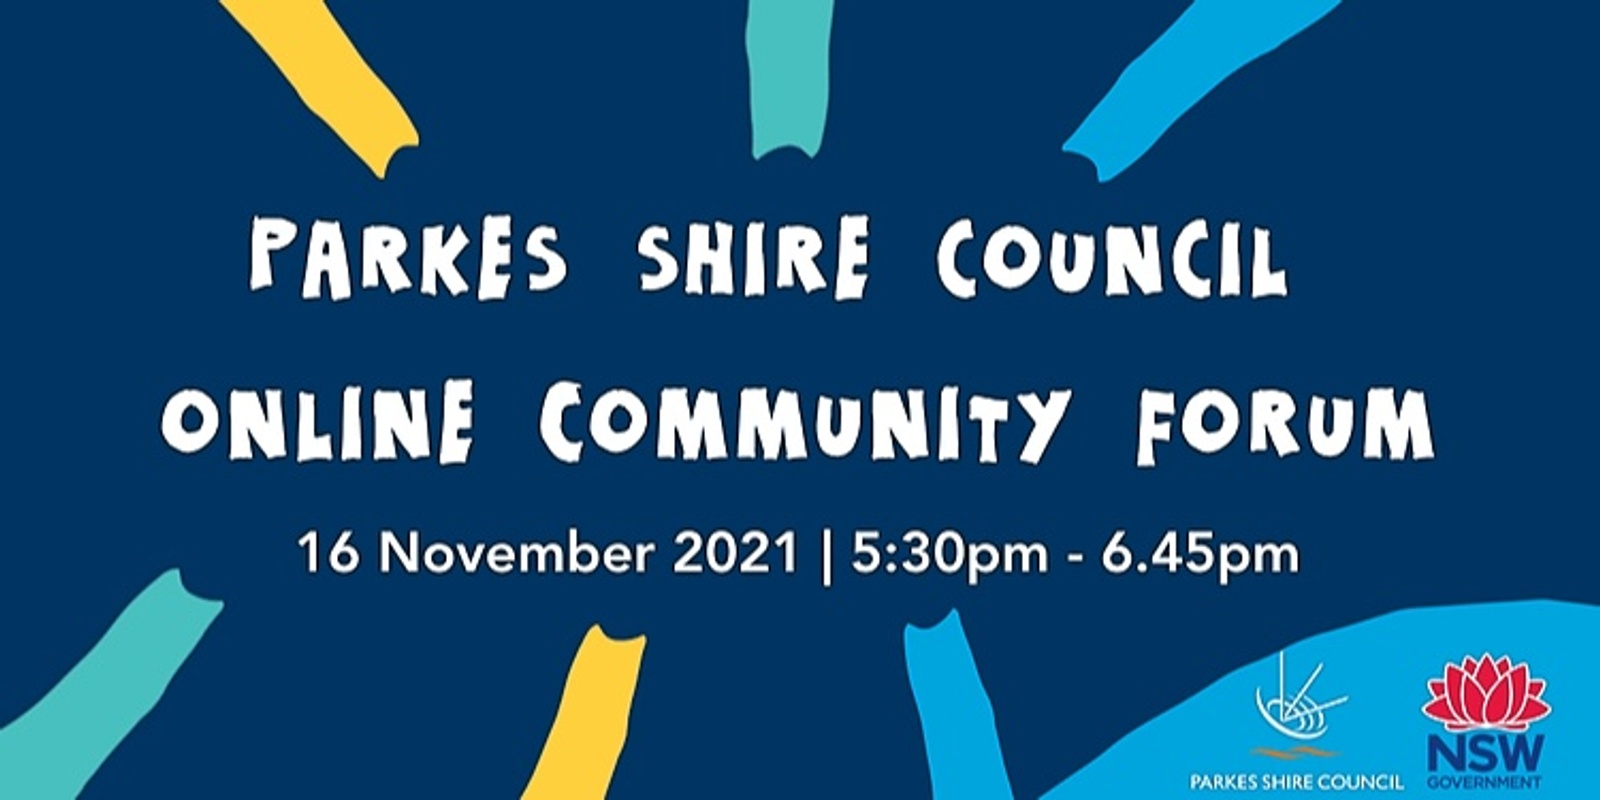 Banner image for Parkes Shire Council community forum